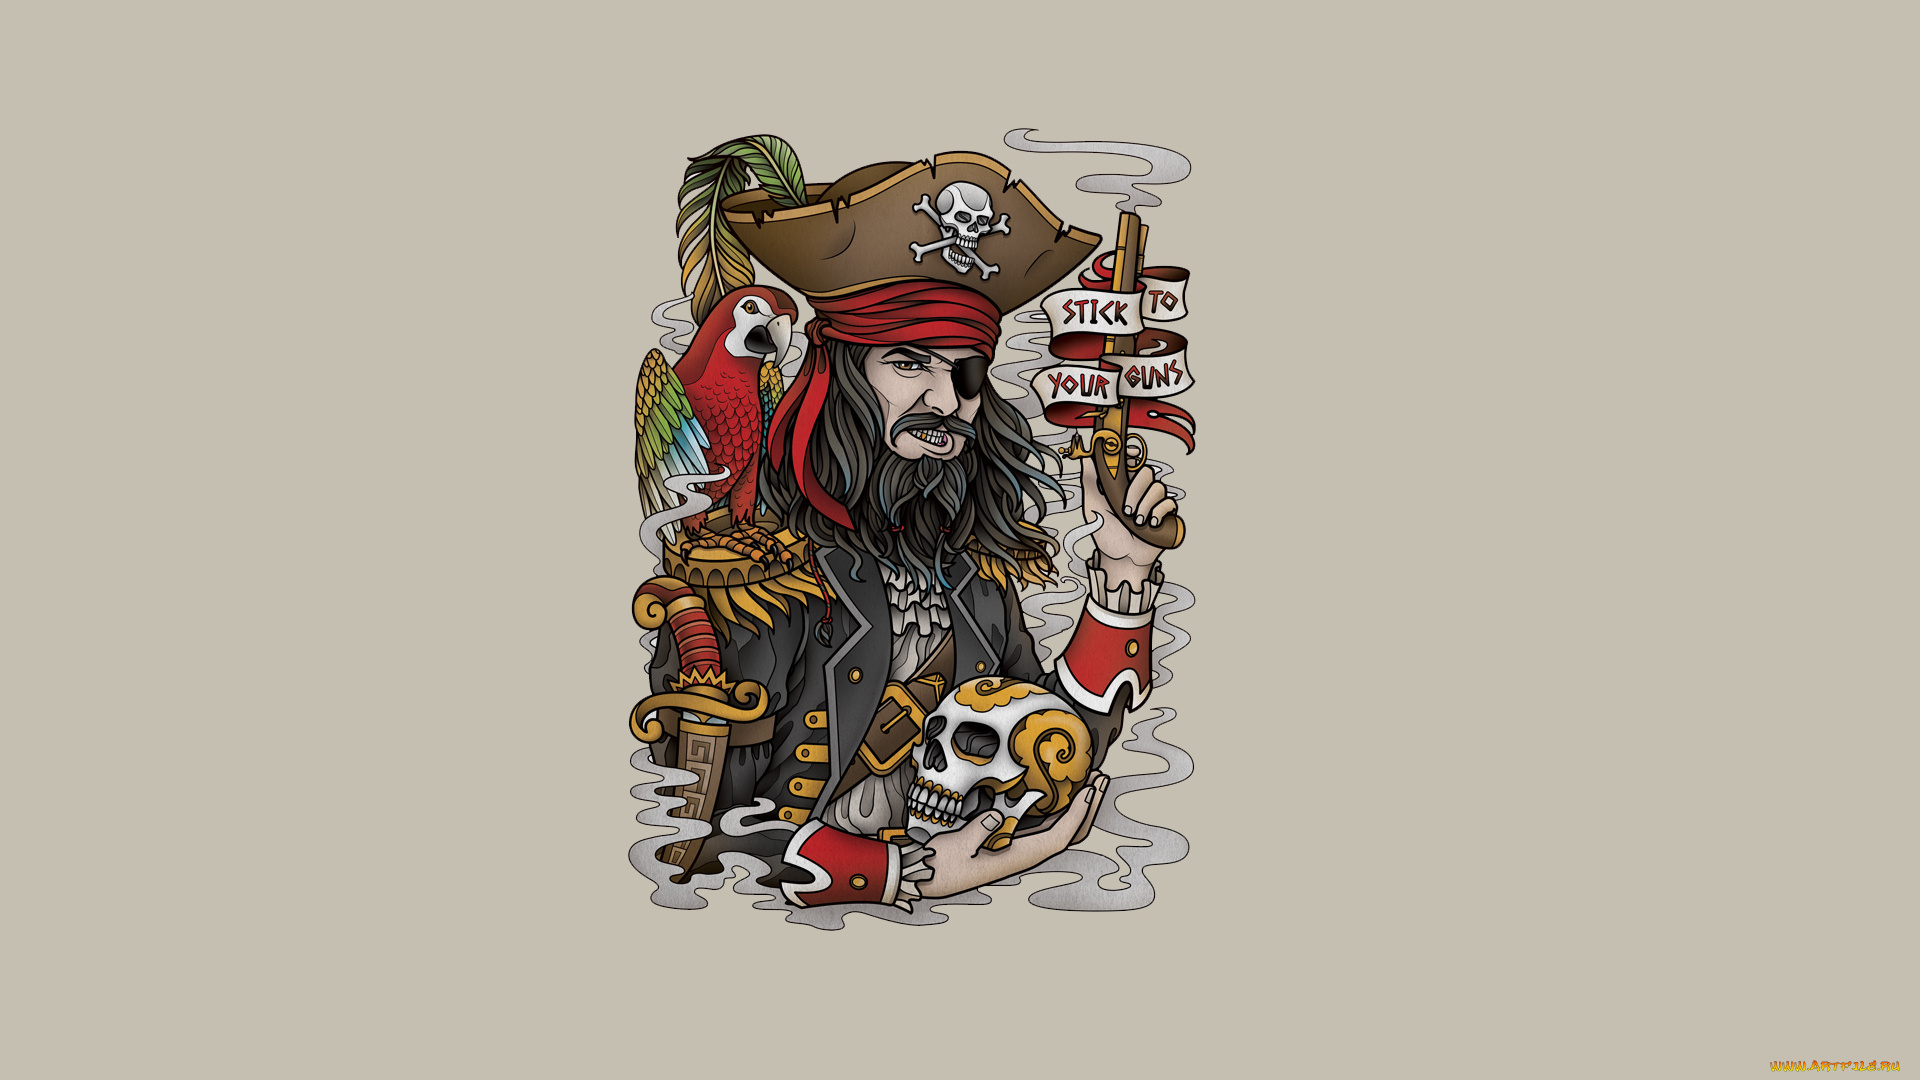 рисованное, минимализм, птица, попугай, pirate, оружие, борода, перья, скелет, голова, надпись, череп, пират